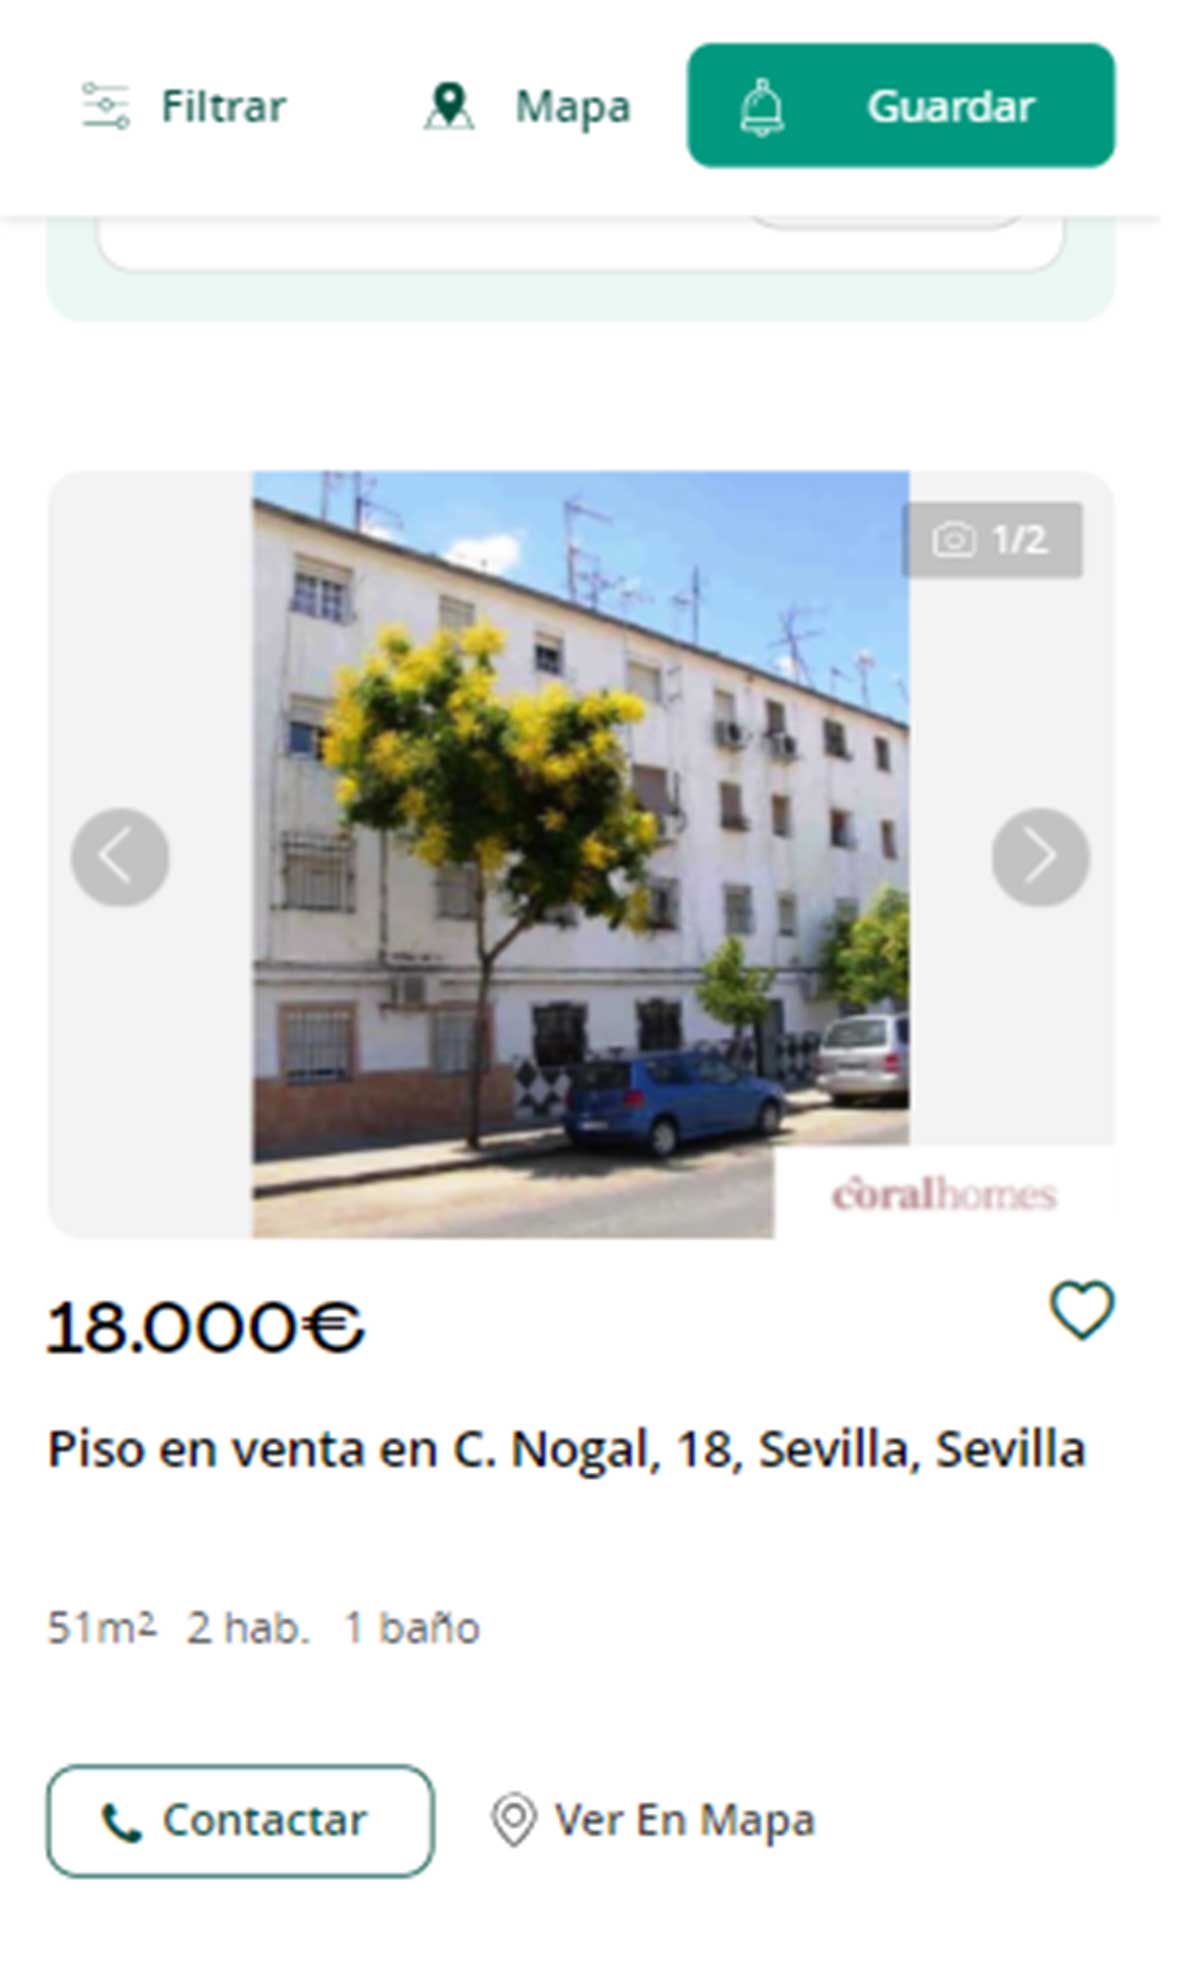 Piso en Sevilla por 18.000 euros